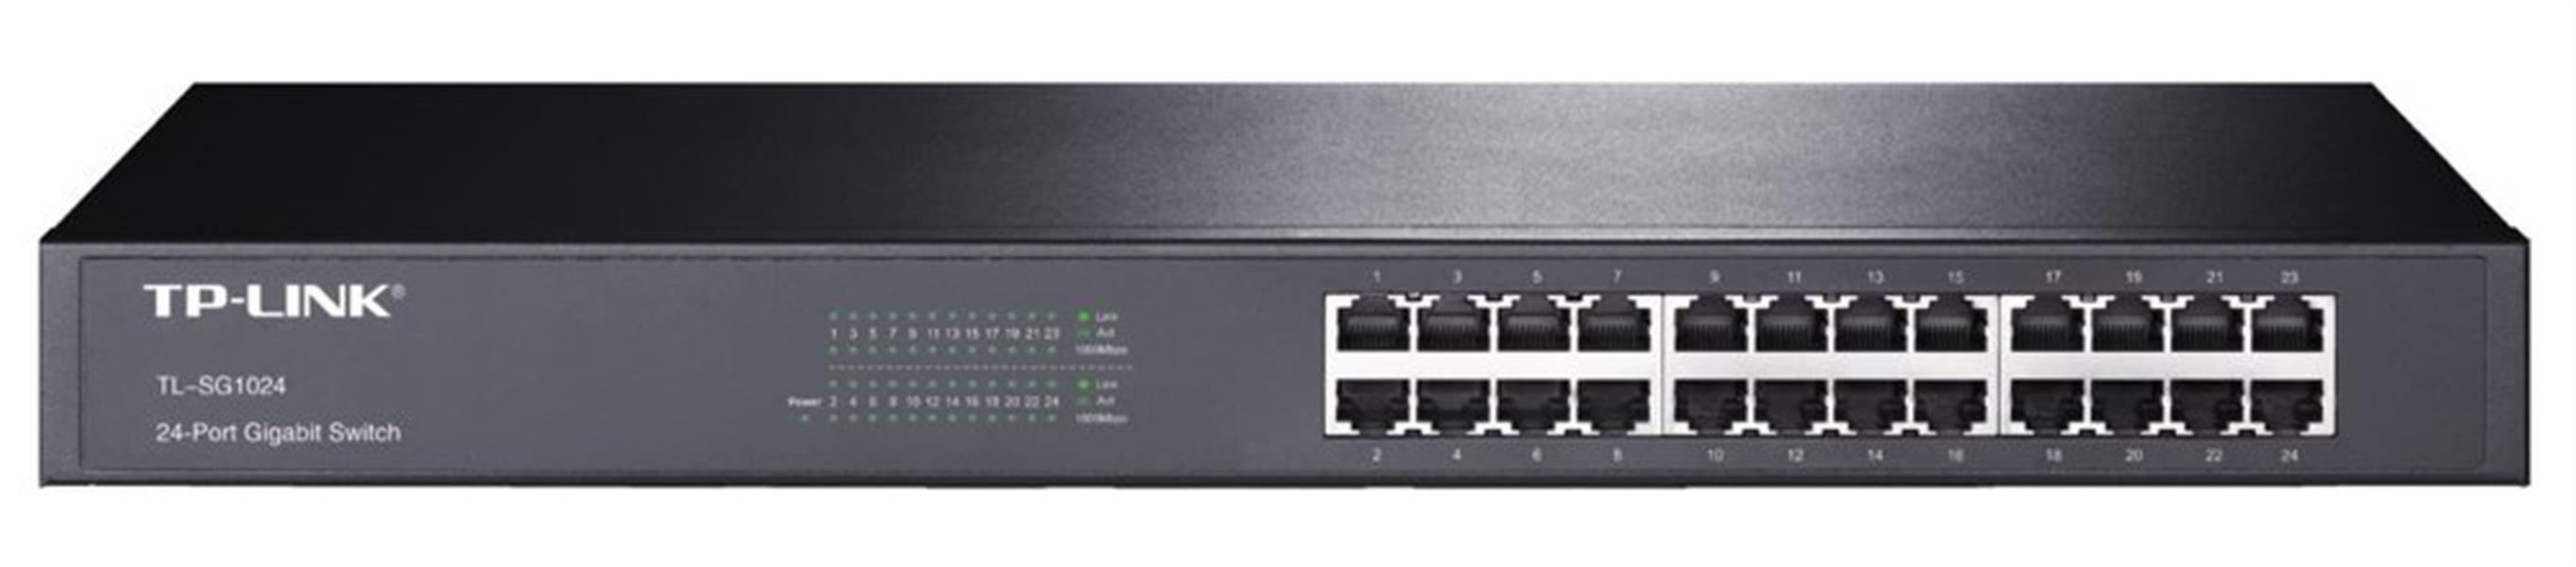 TP-LINK 24-Port Gigabit Switch Unmanaged